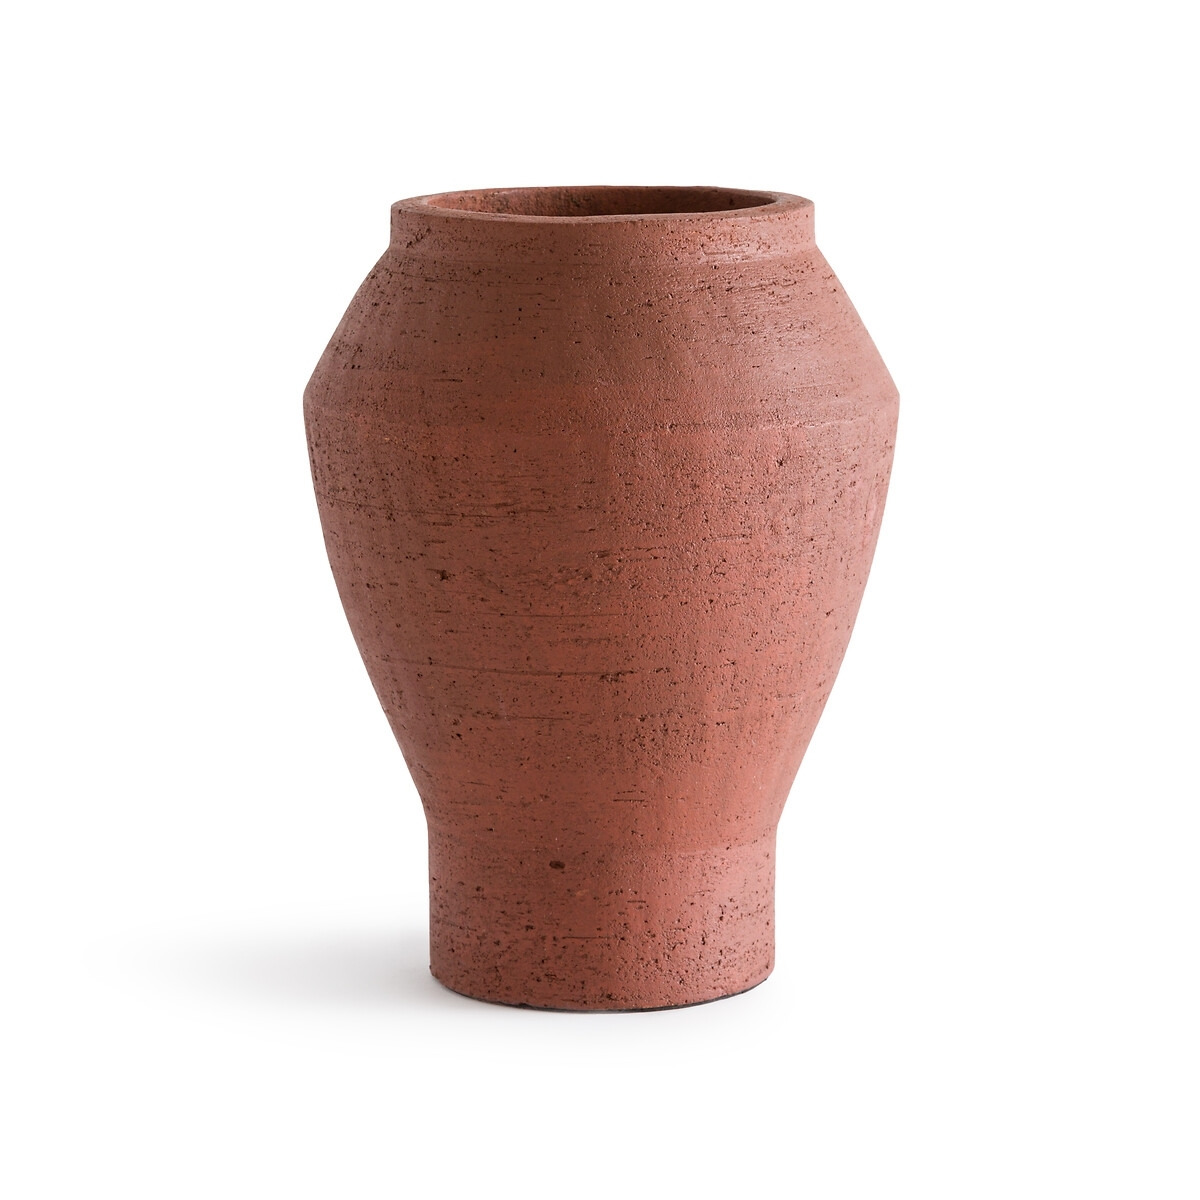 Tulia Terracotta Vase - image 1